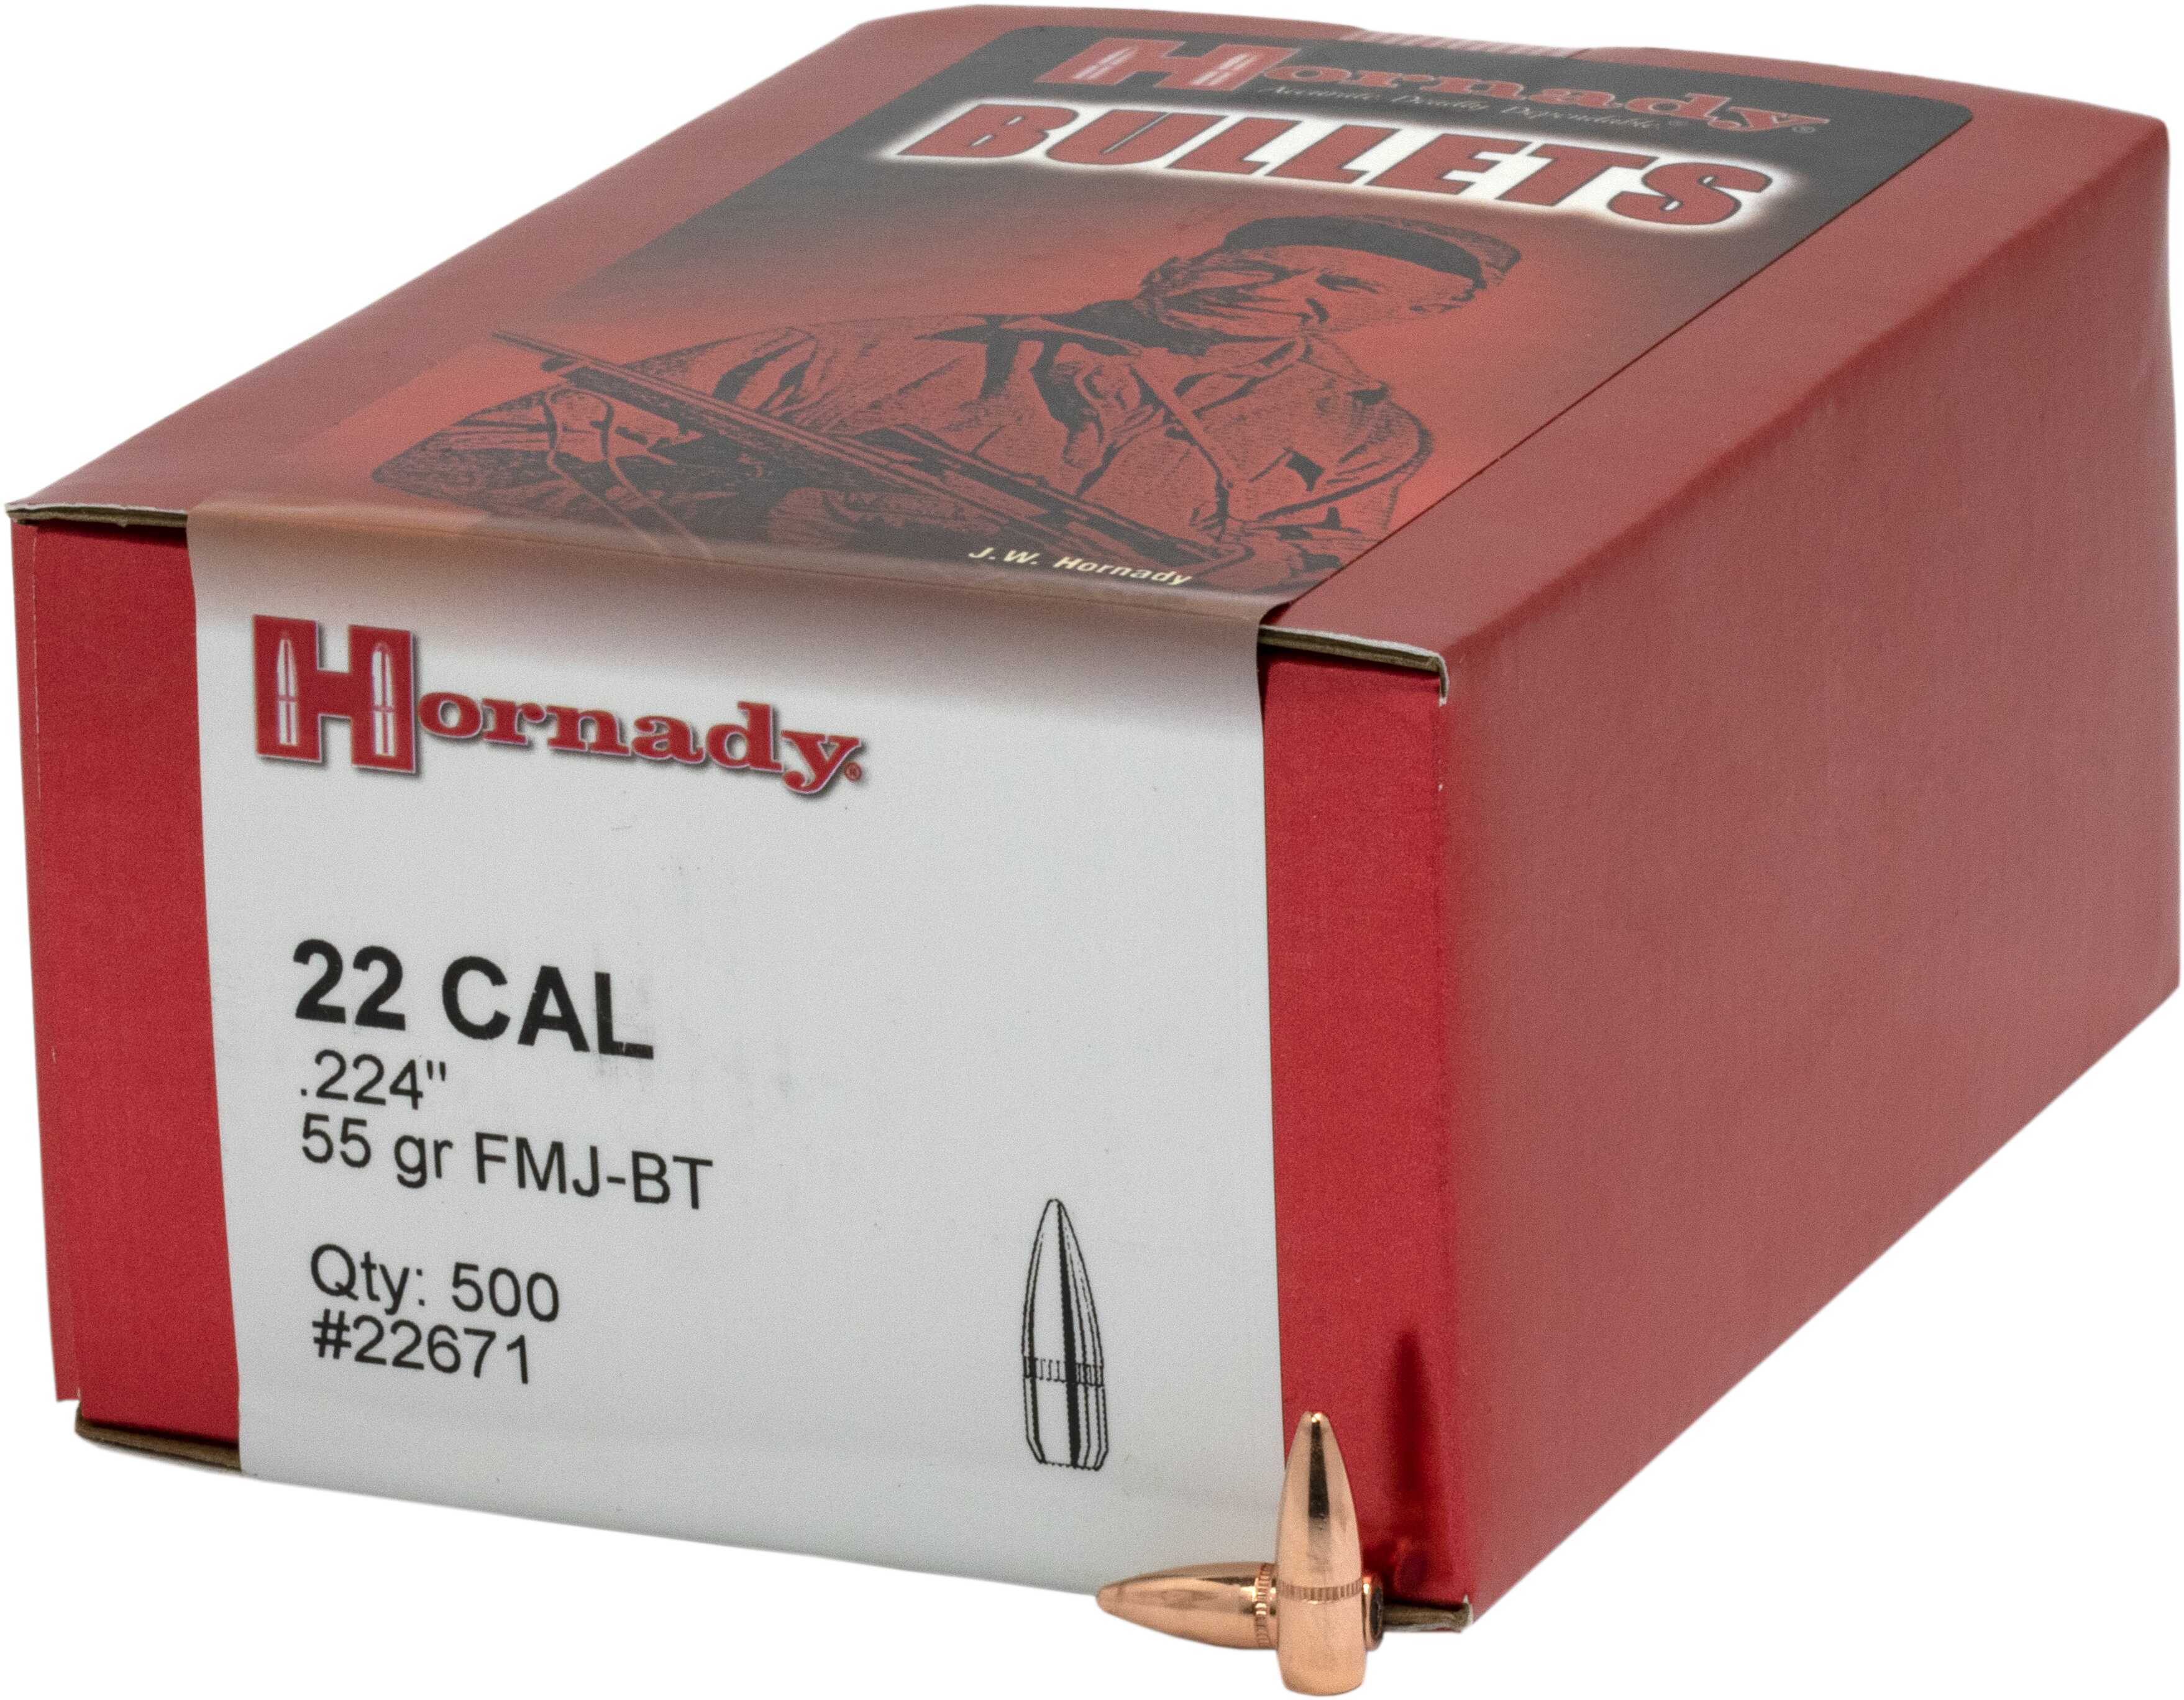 Hornady Bullet 22 Caliber .224 55 Grain FMJ-BT W/C 500/Bx